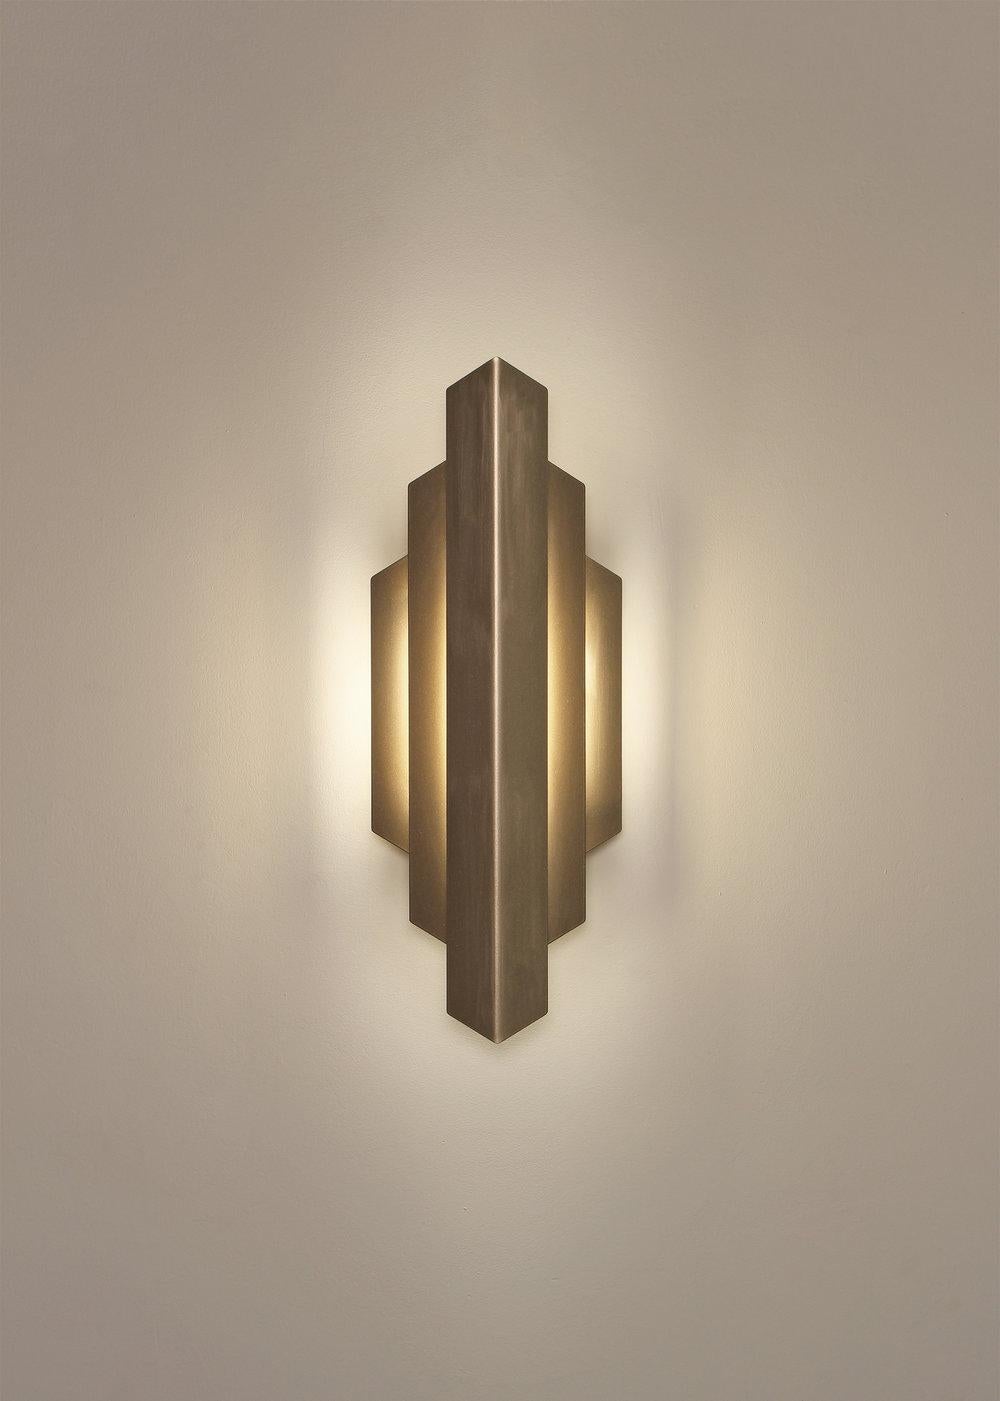 L'applique Deco lave le mur d'une douce lueur de lumière indirecte. Sa forme saisissante s'inspire des lignes géométriques audacieuses qui définissent le mouvement Art déco. L'applique Deco fournit un éclairage d'accentuation doux pour un couloir ou